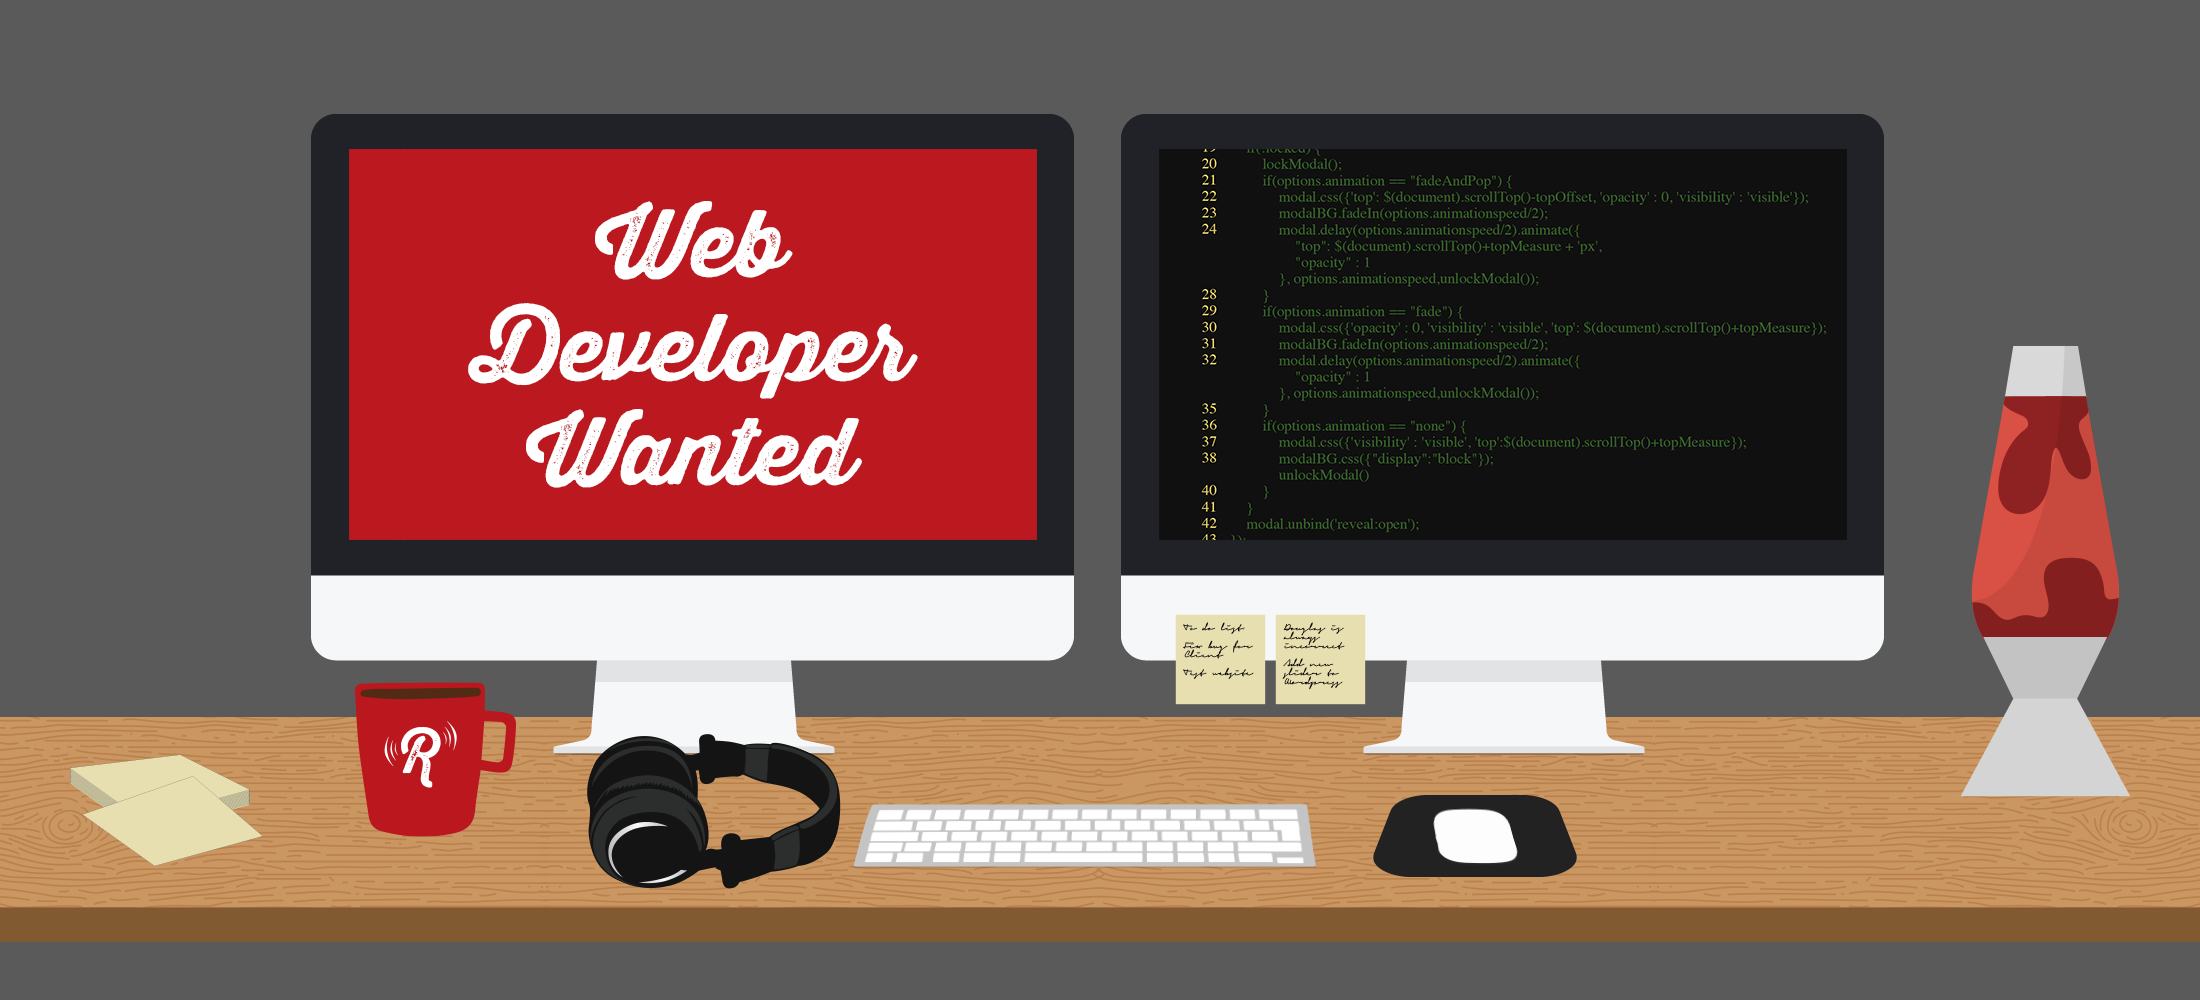 Recruiting A Web Developer 007